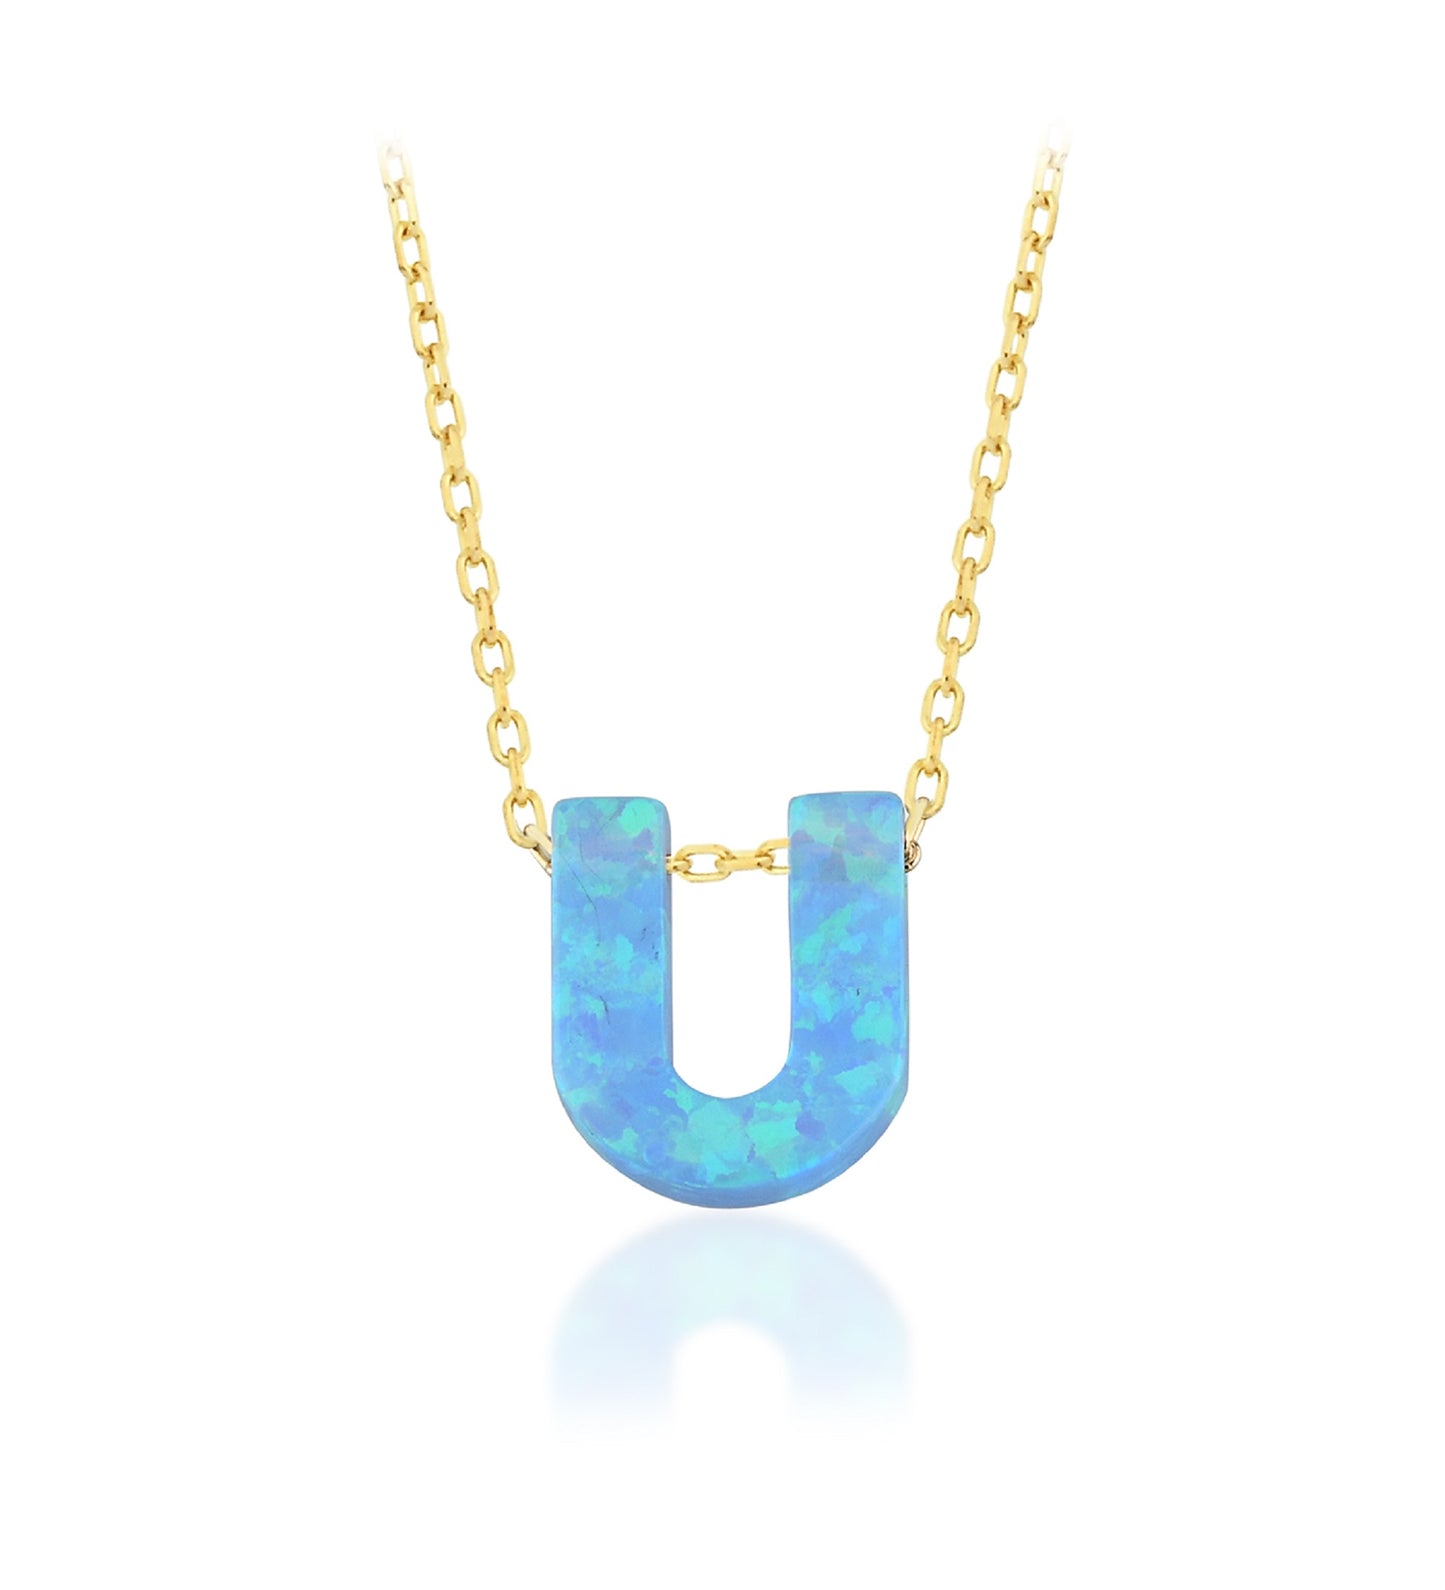 Blue Opal Initial Necklace - "U" letter pendant